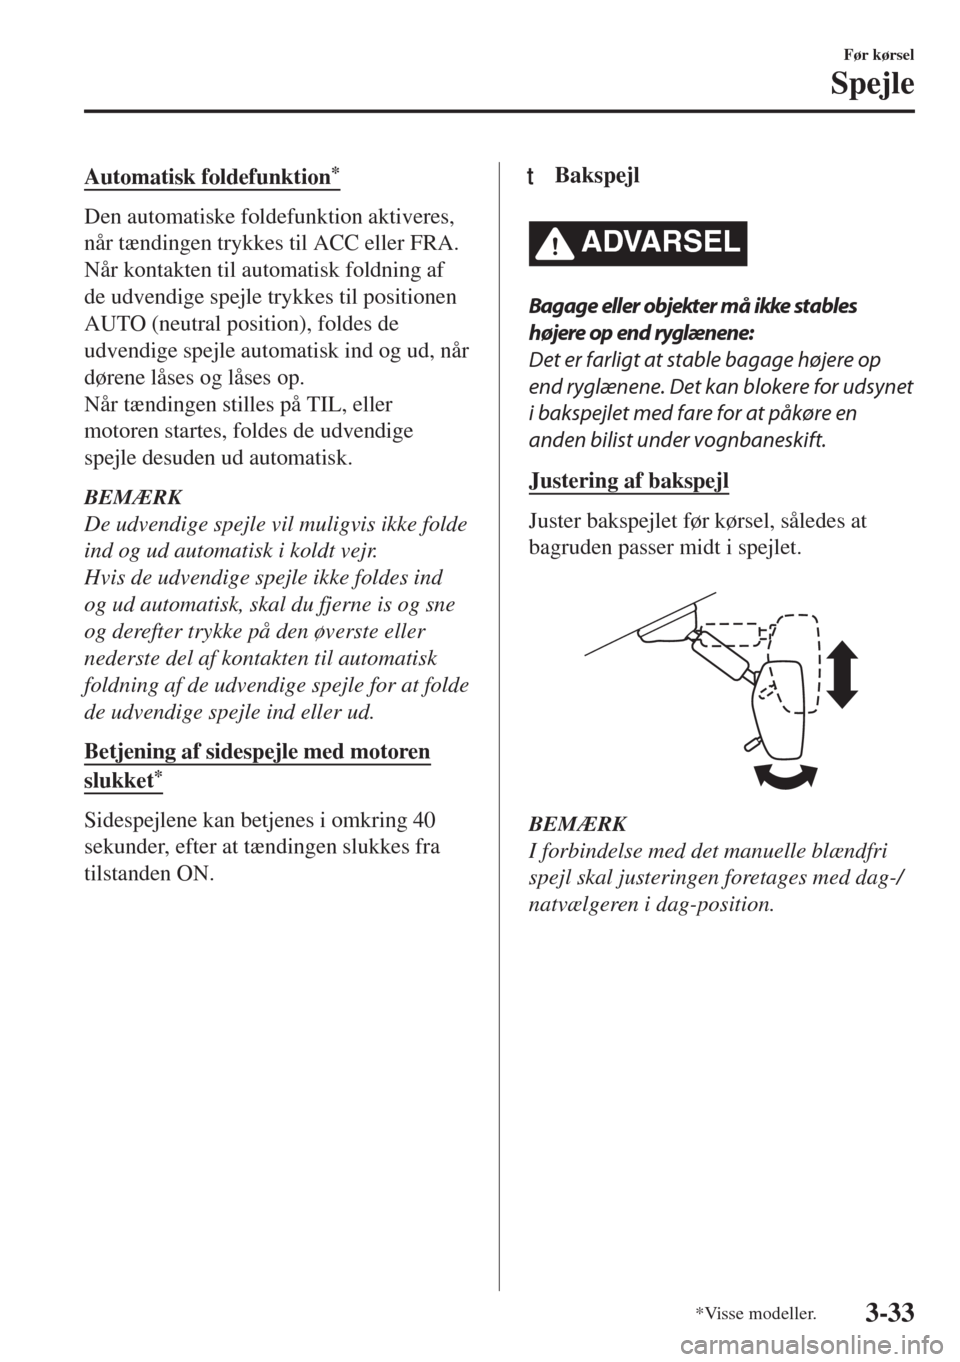 MAZDA MODEL 6 2018  Instruktionsbog (in Danish) Automatisk foldefunktion*
Den automatiske foldefunktion aktiveres,
når tændingen trykkes til ACC eller FRA.
Når kontakten til automatisk foldning af
de udvendige spejle trykkes til positionen
AUTO 